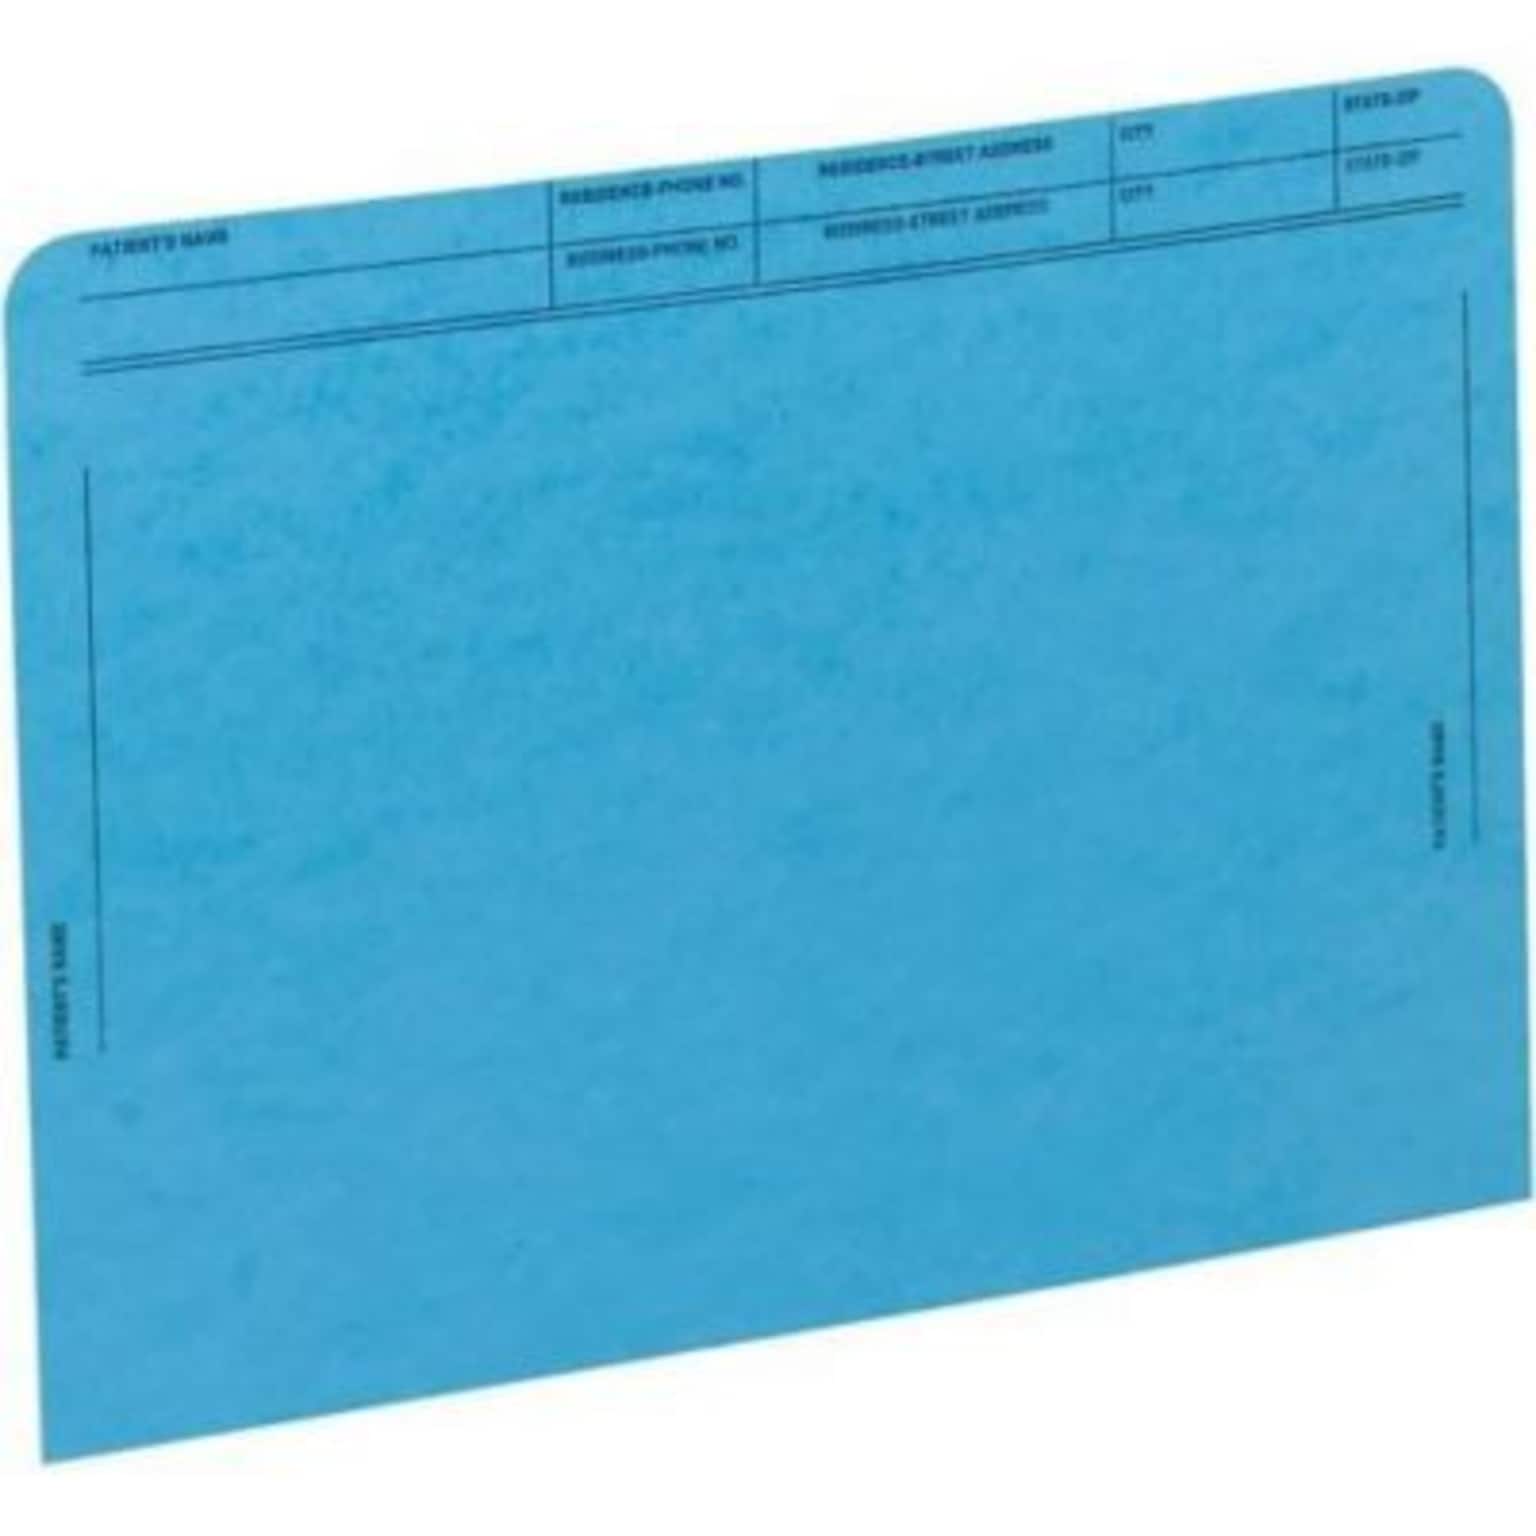 Medical Arts Press®  File Pocket, Letter Size, Dark Blue, 50/Box (59547BL)